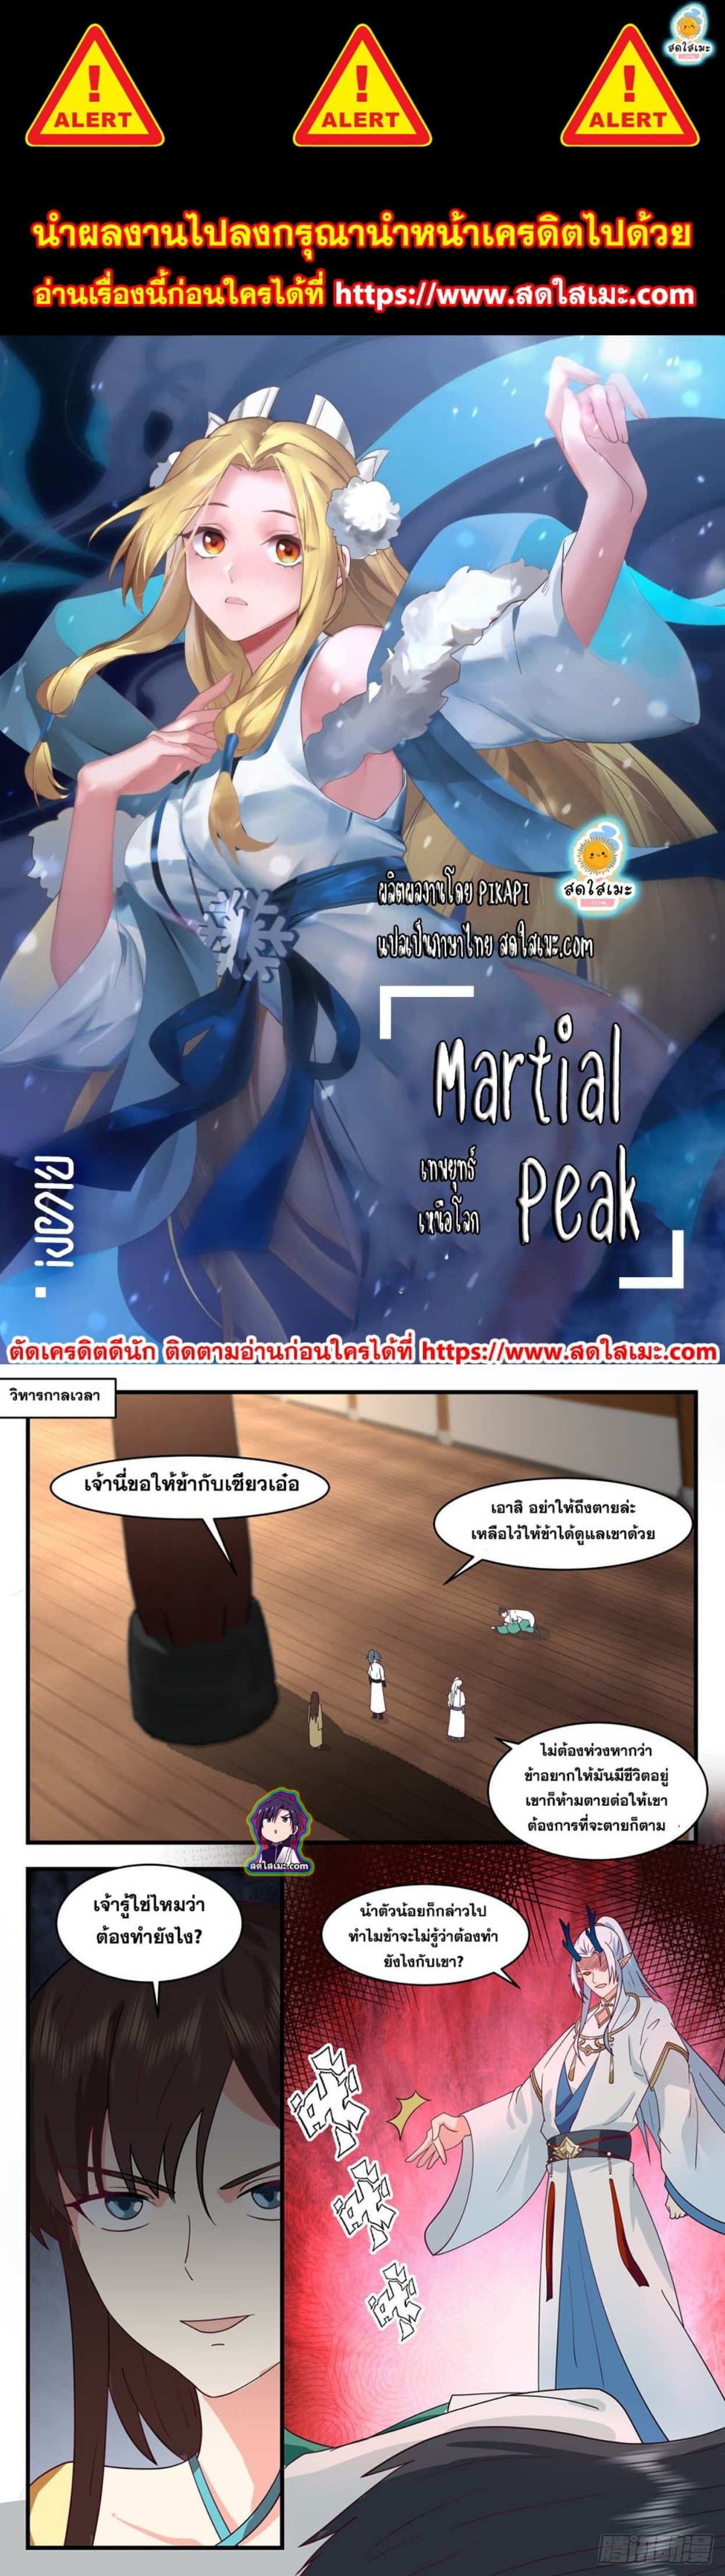 Martial Peak à¸•à¸­à¸™à¸—à¸µà¹ˆ 2487 (1)